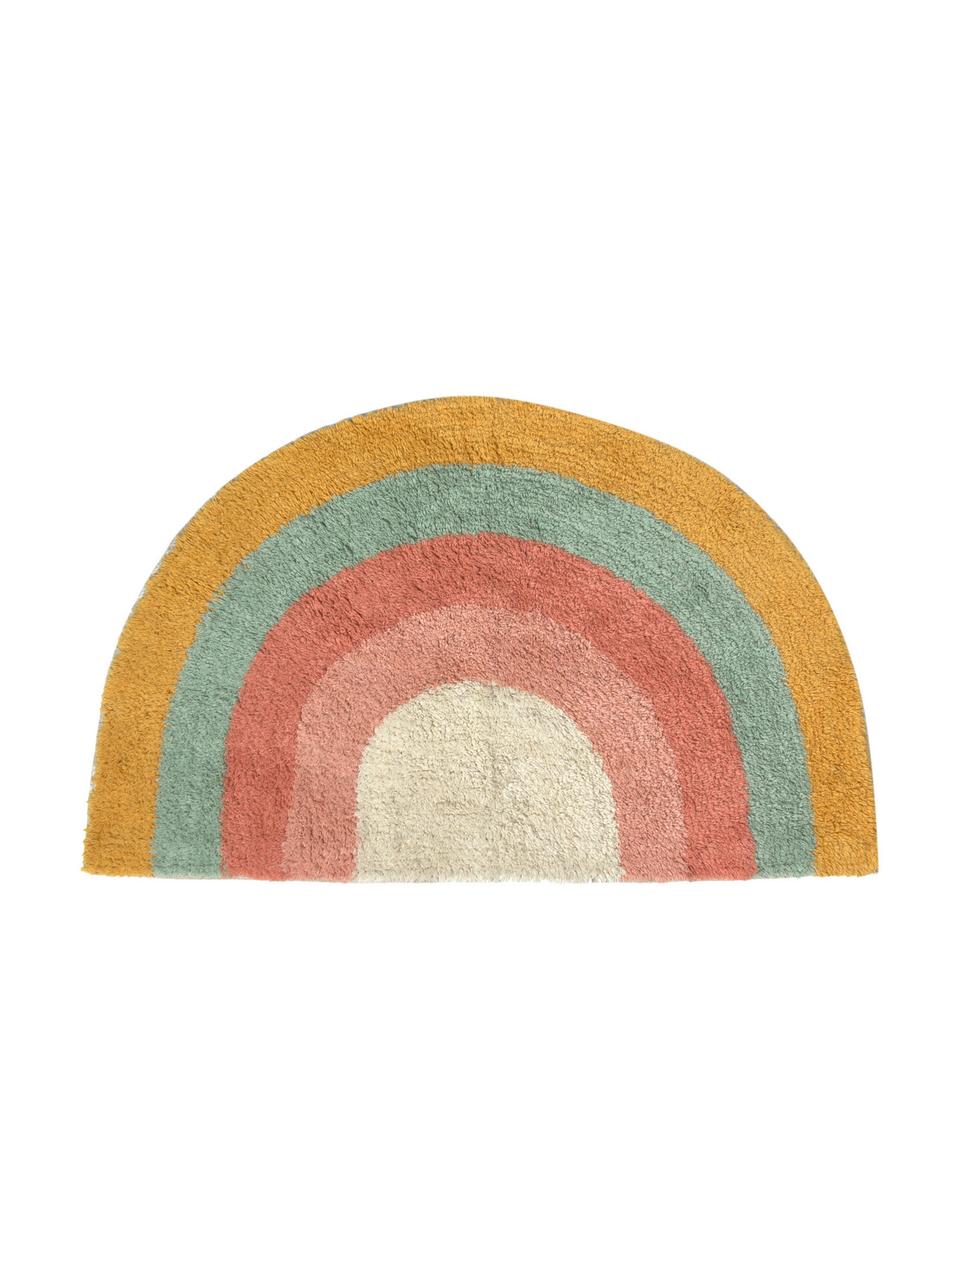 Badvorleger Arco im Regenbogen-Design, 100% Baumwolle, Mehrfarbig, 80 x 45 cm